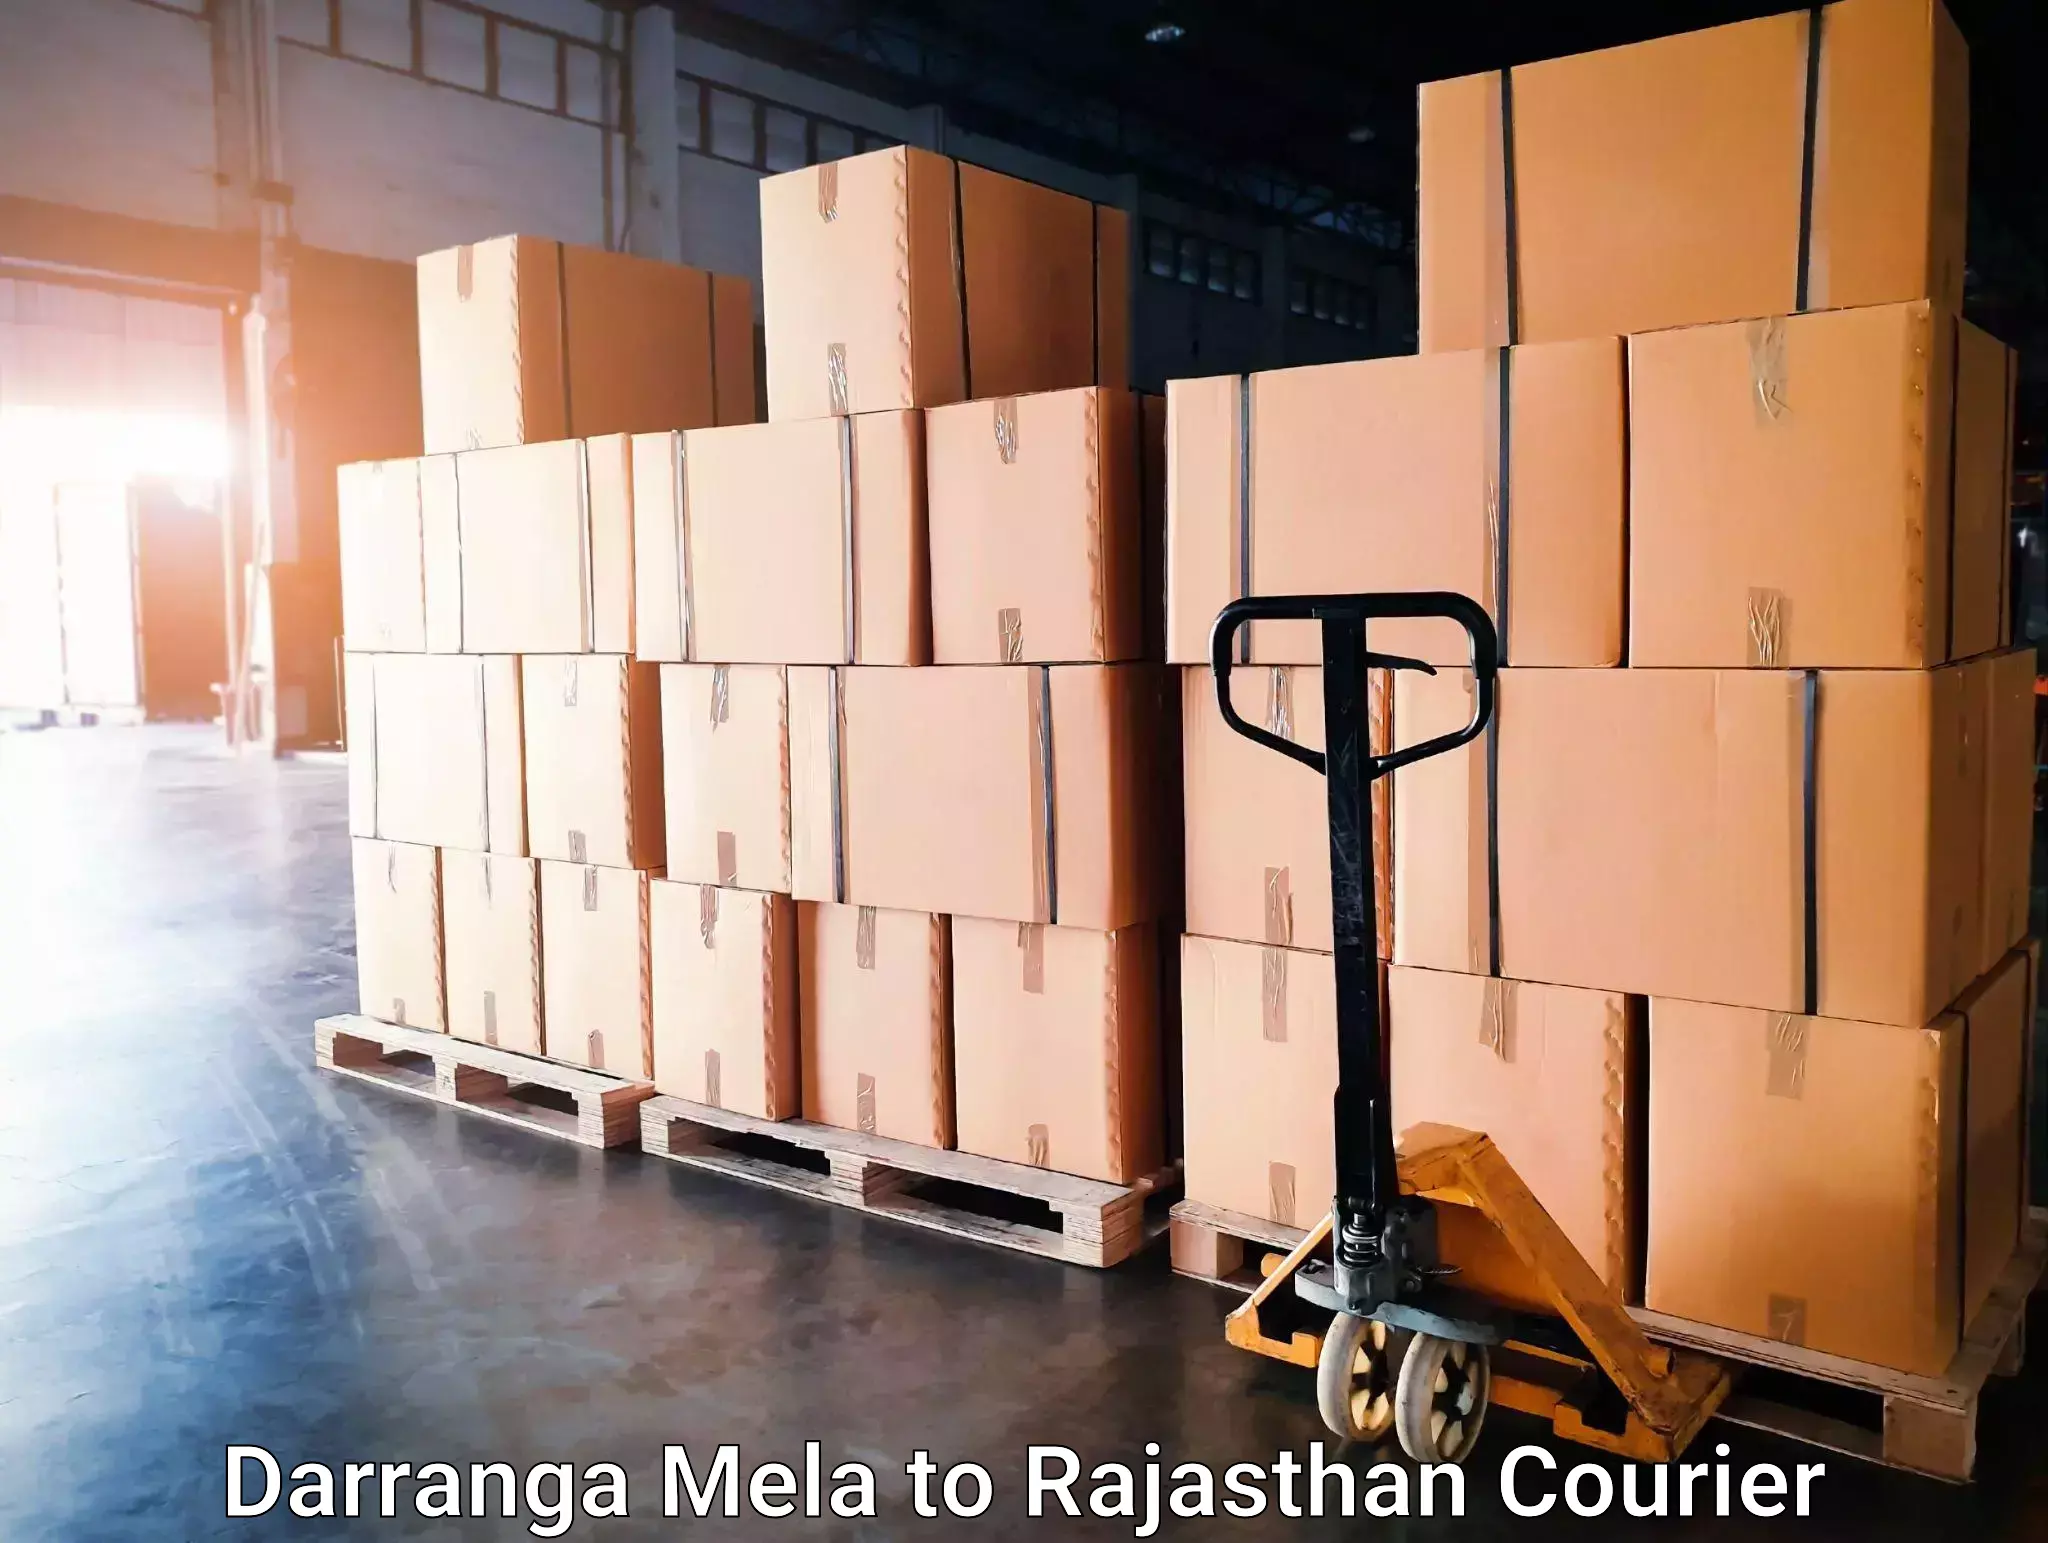 Courier service innovation Darranga Mela to Chaumahla